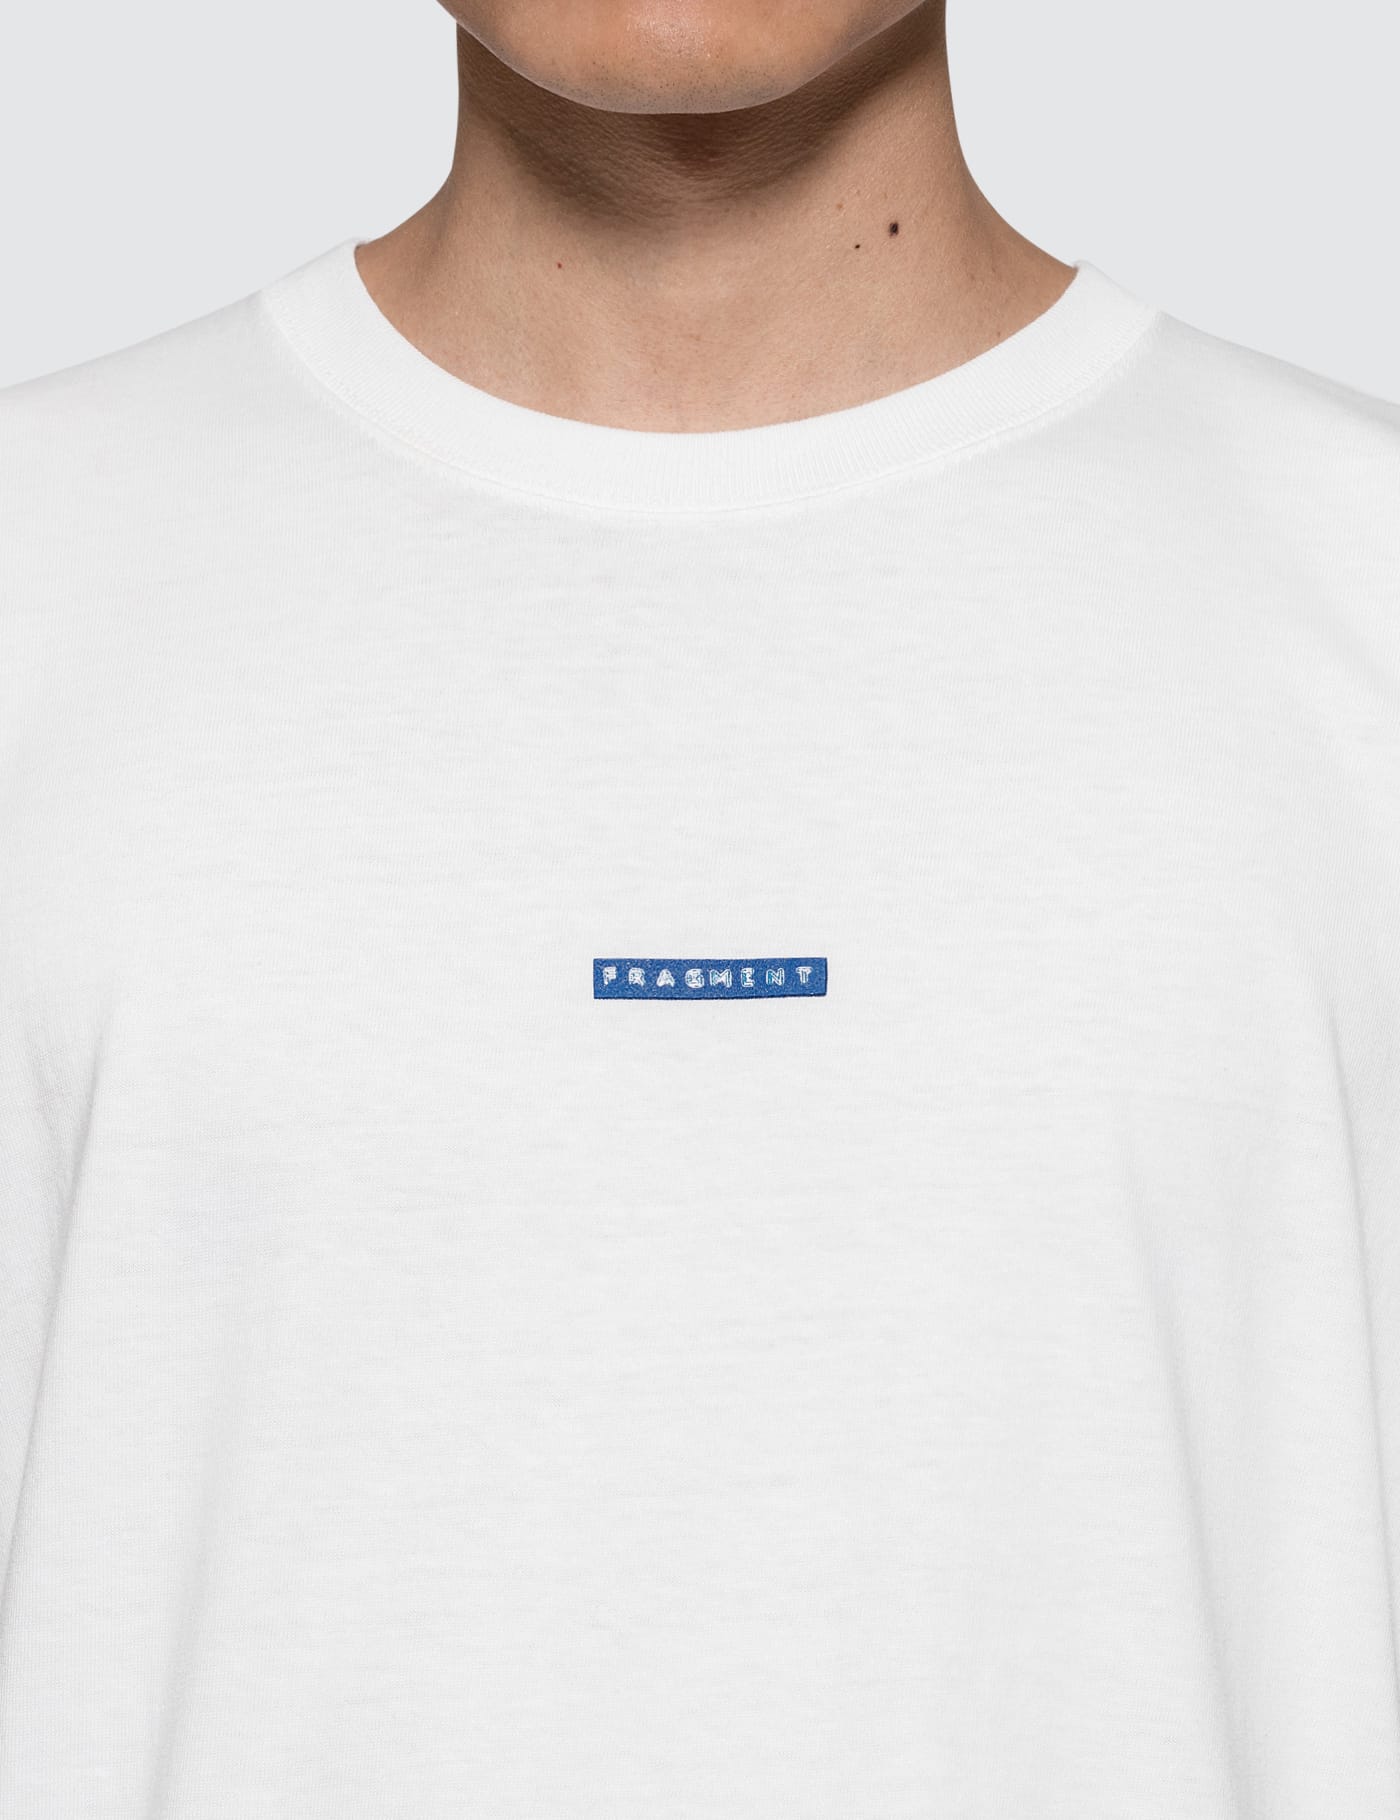 Sacai x Fragment Design - Sacai S/S T-Shirt | HBX - Globally 